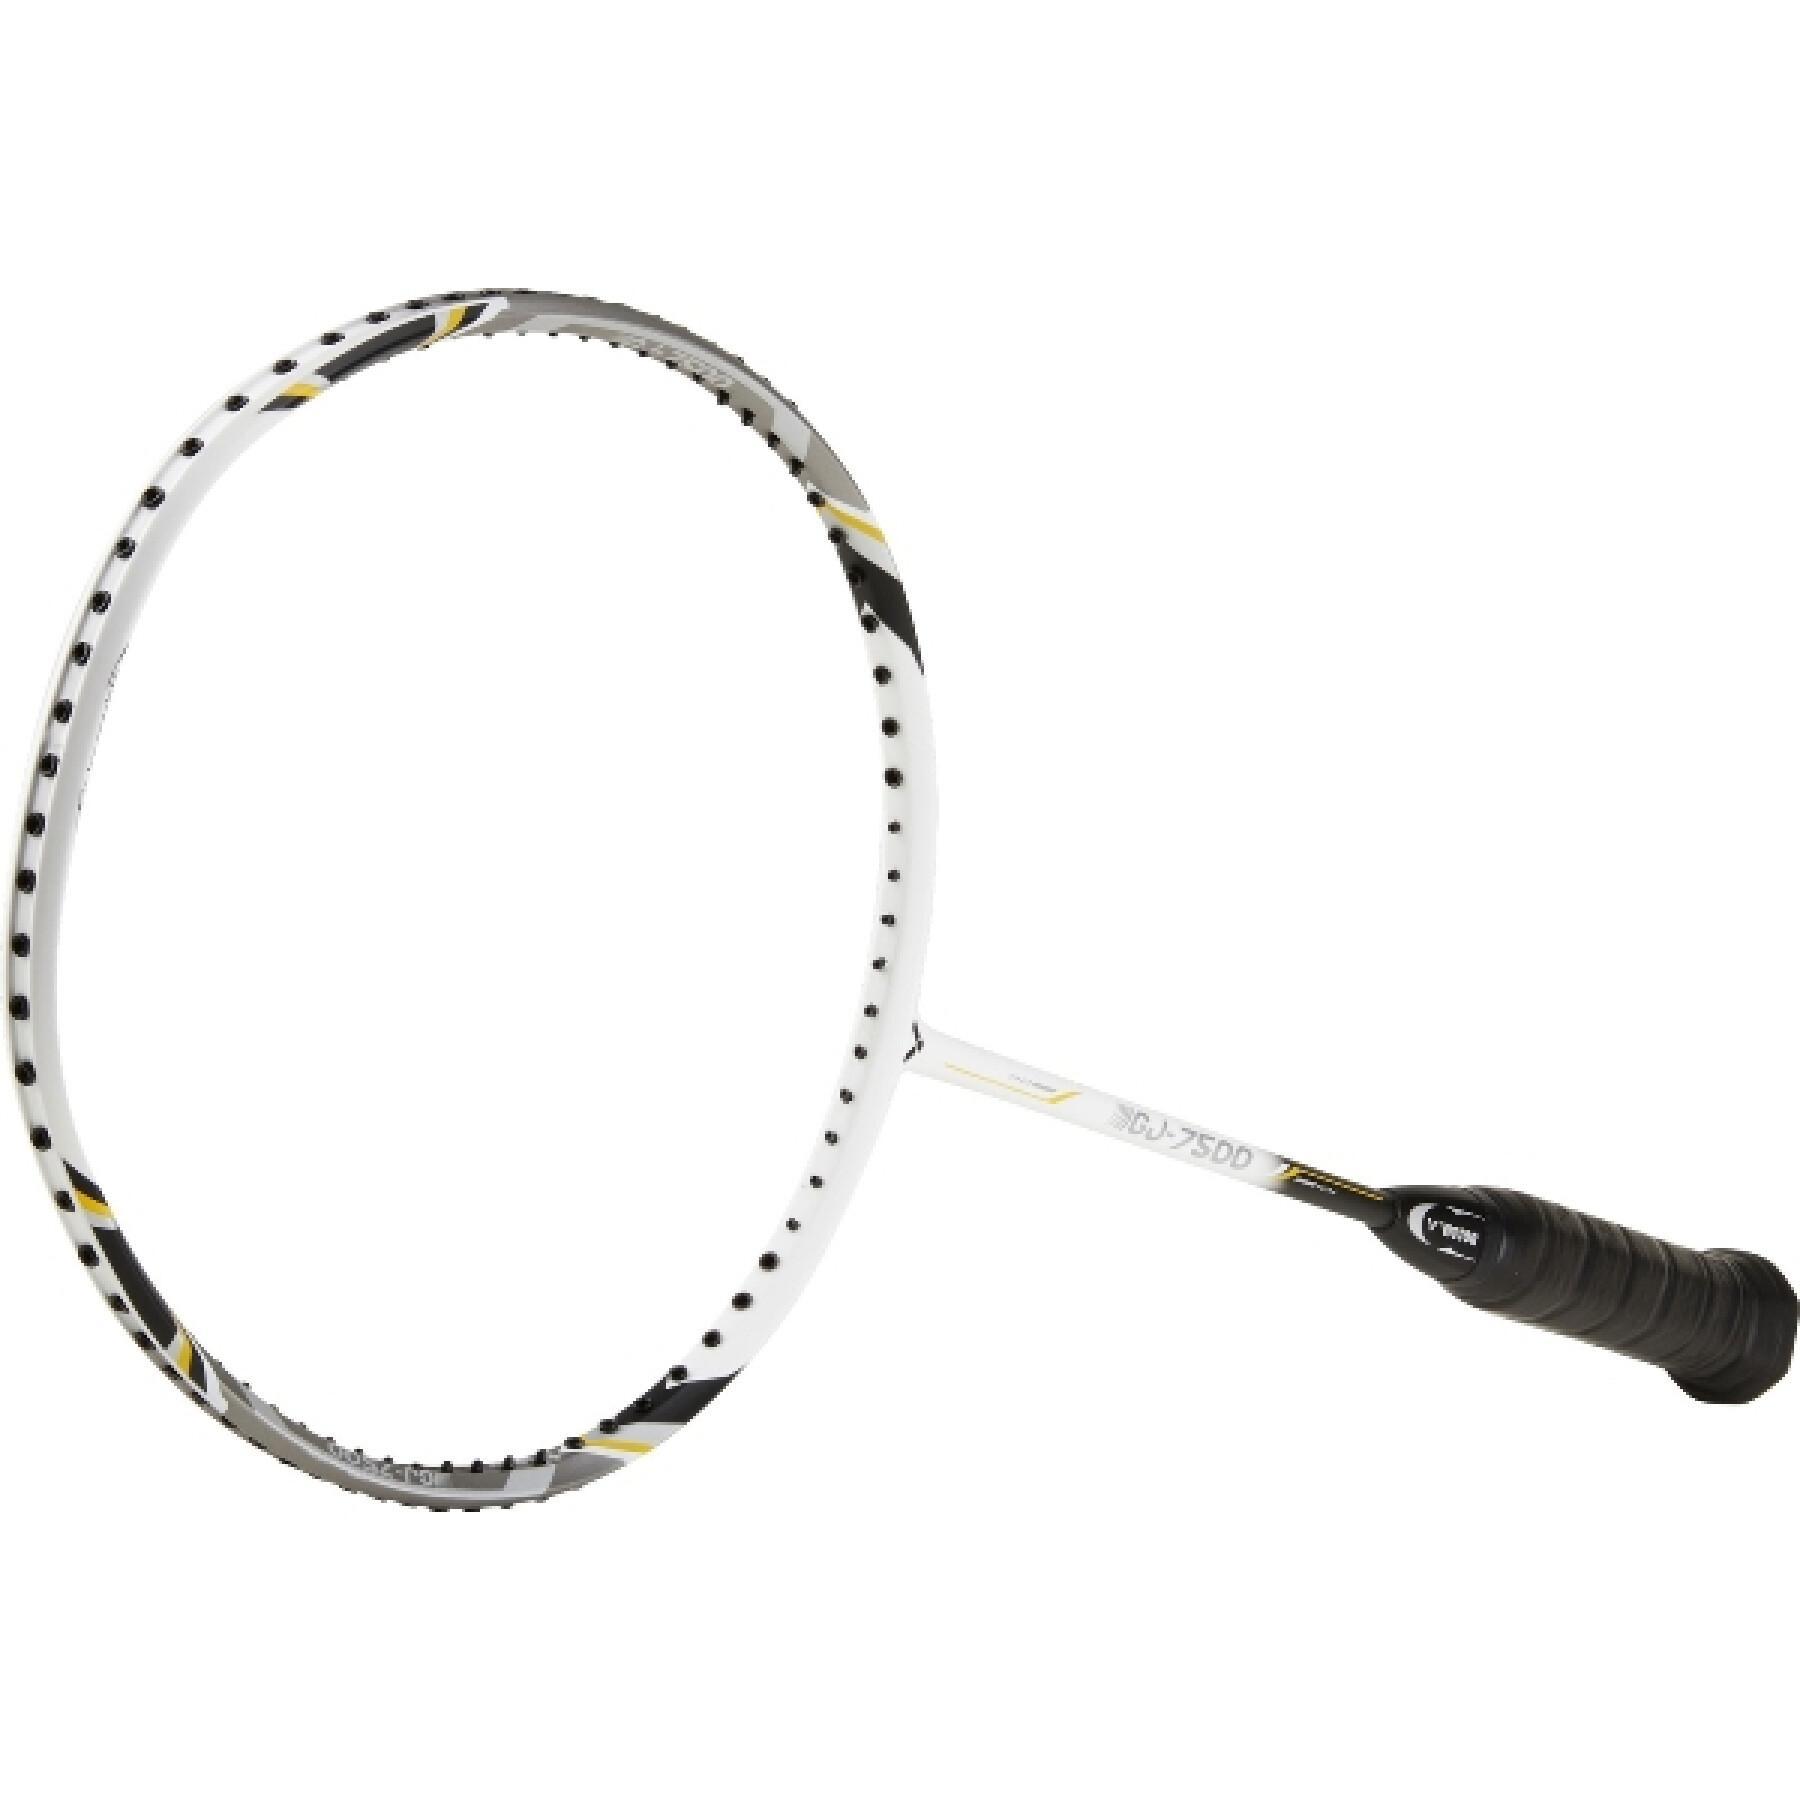 Children's racket Victor Gj-7500